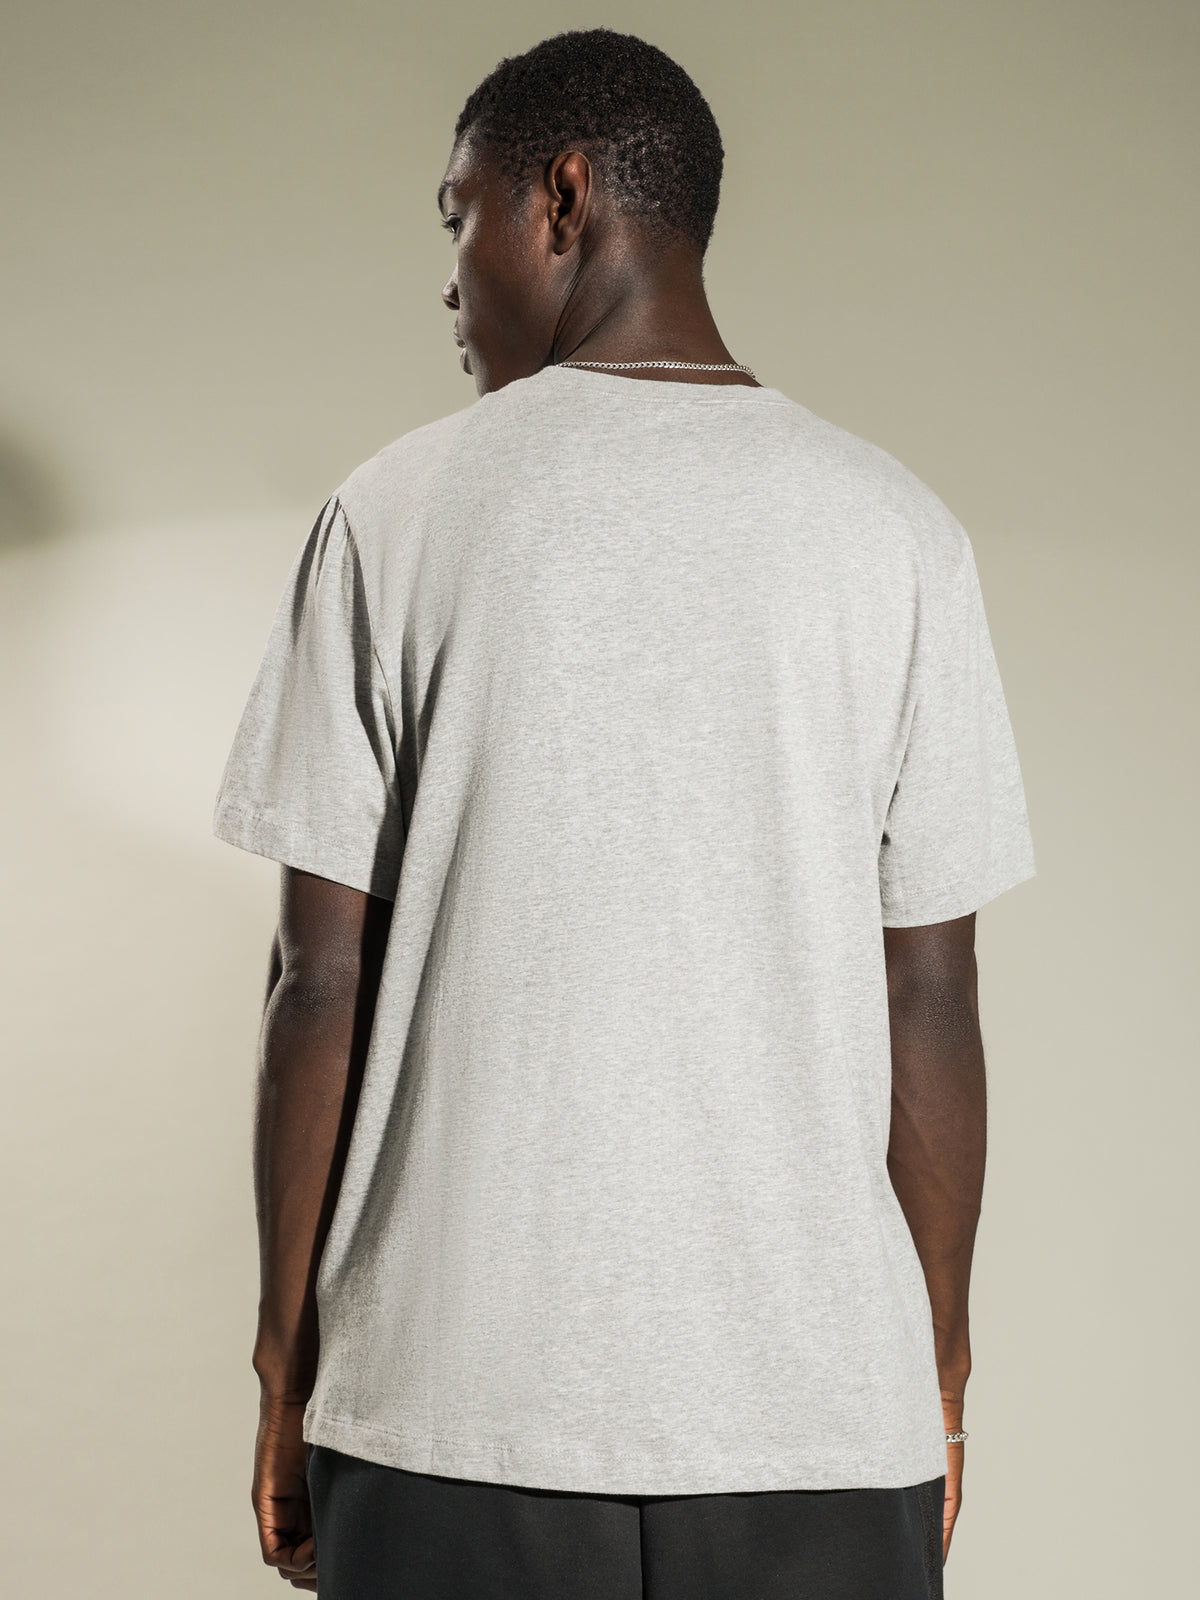 NSW Club Short Sleeve T-Shirt in Dark Grey